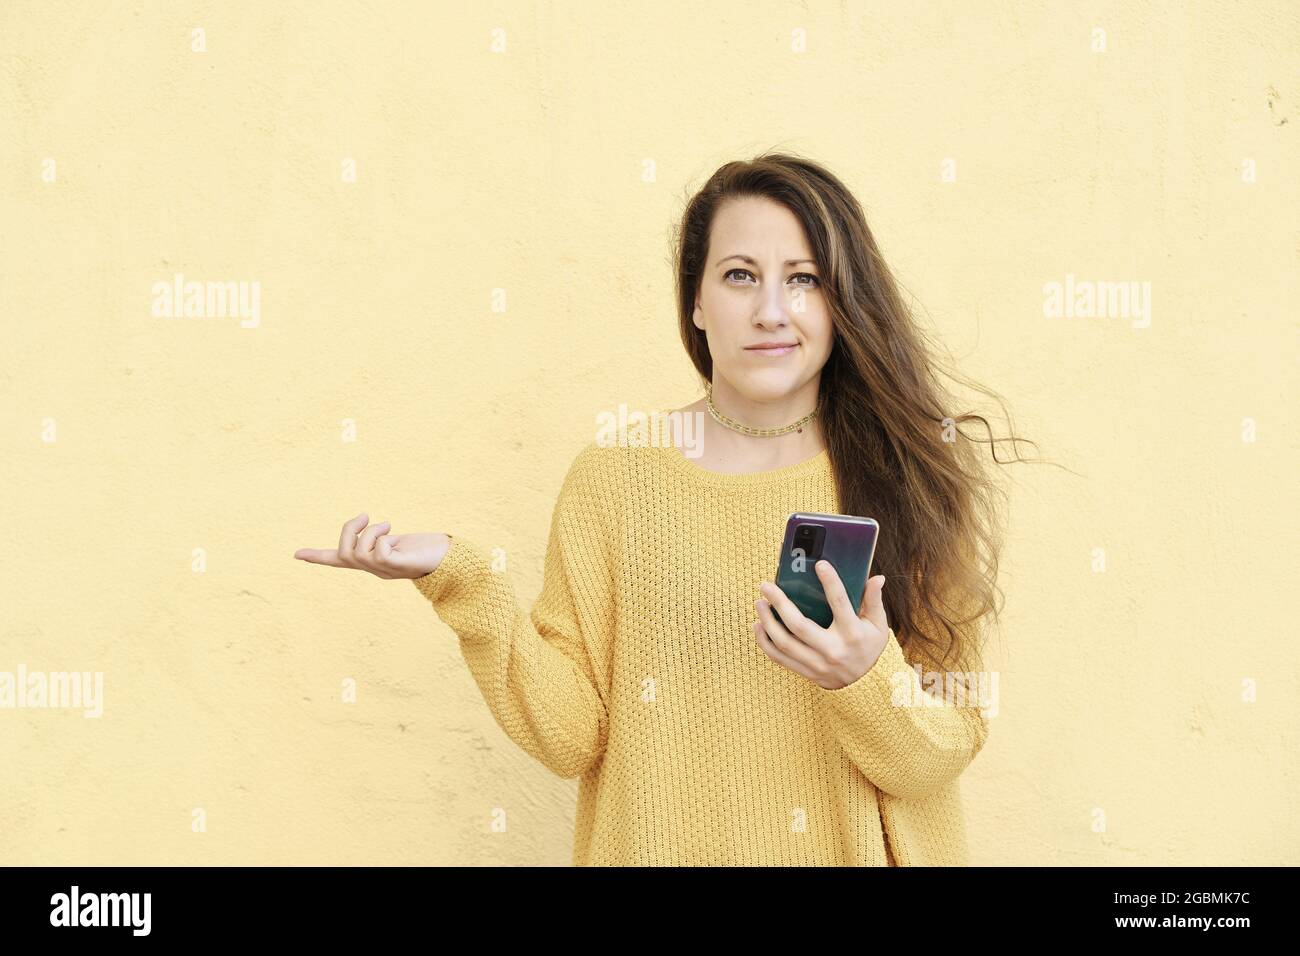 giovane bionda donna perplessa ed esitante con un'espressione divertita usando uno smartphone Foto Stock